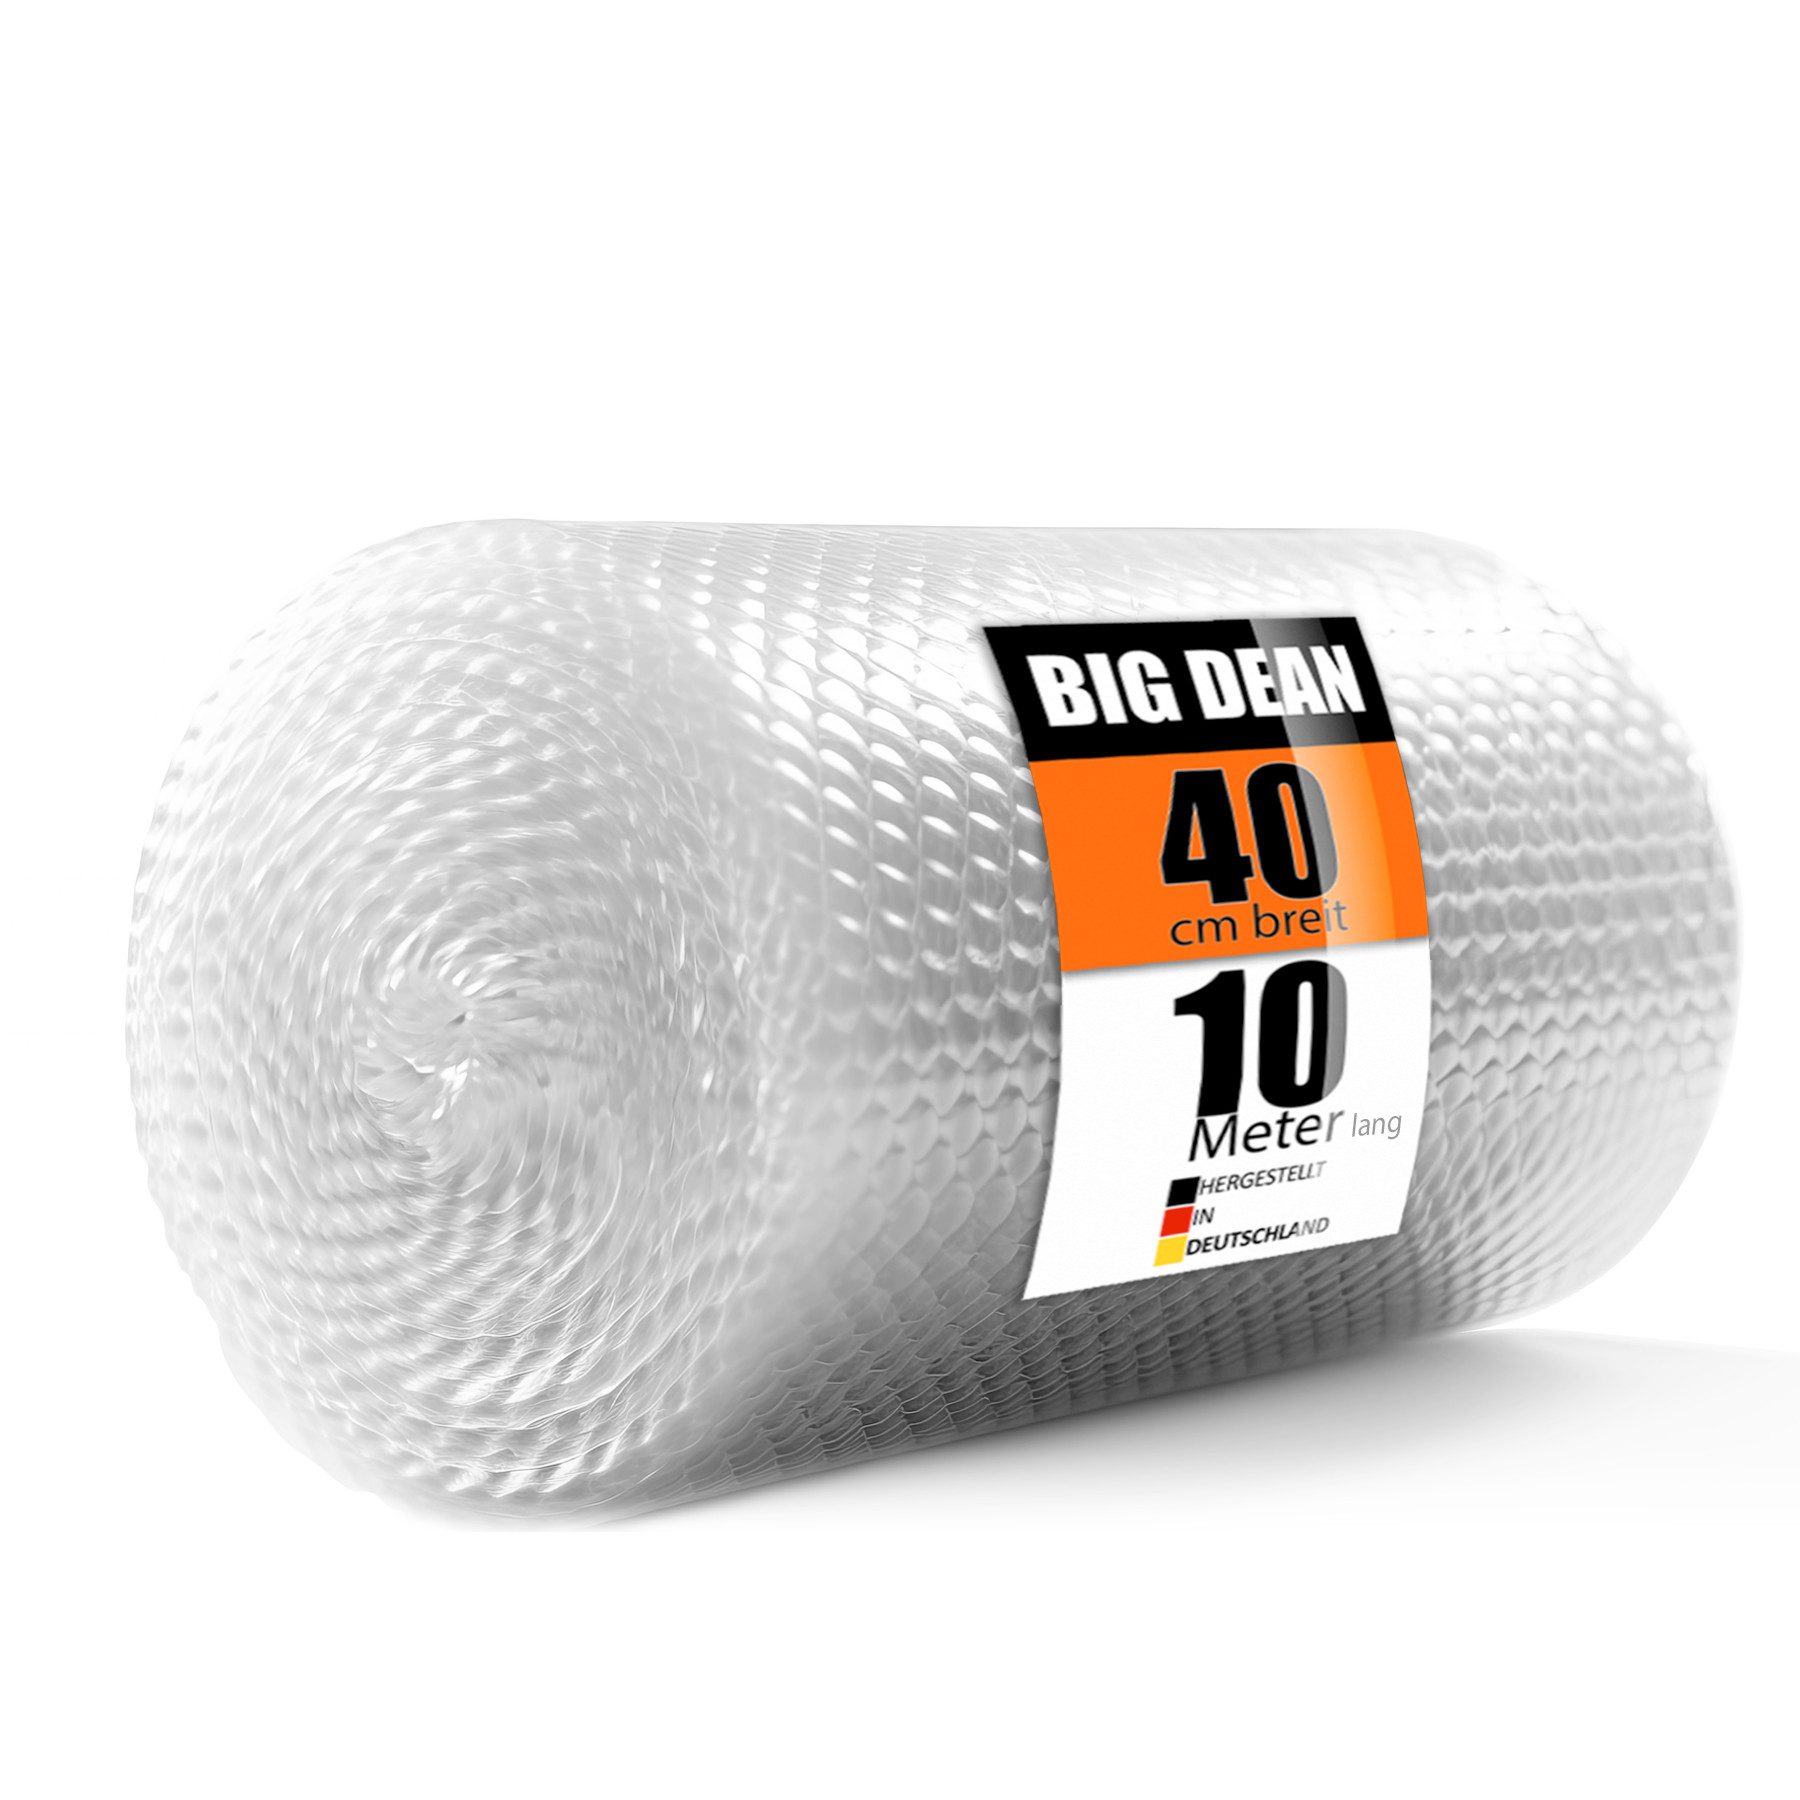 BigDean Schutzfolie Luftpolsterfolie Rolle 80 my 3-lagig 10m x 0,40m ideal für Verpackung, (1-St)